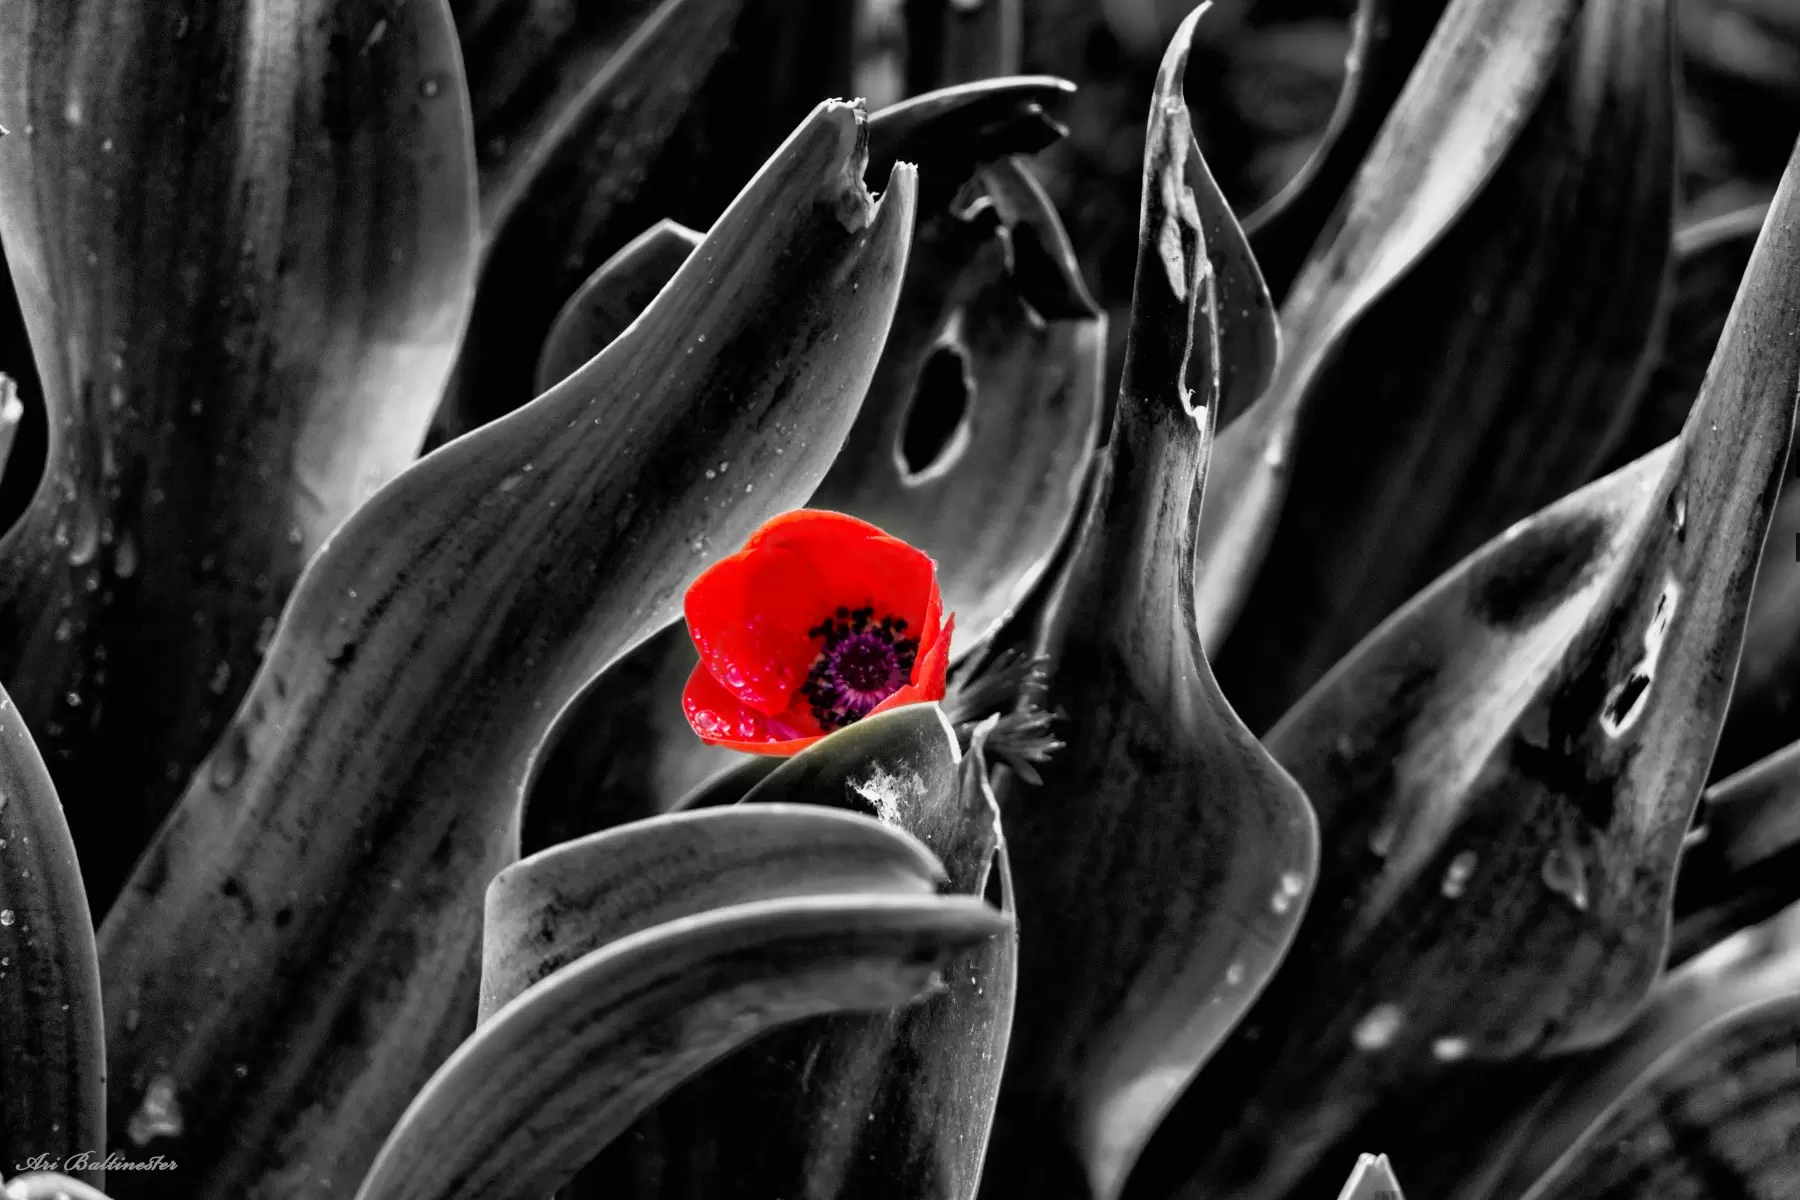 צבע אדום - ארי בלטינשטר - תמונות רומנטיות לחדר שינה תמונות שחור לבן תמונות בחלקים  - מק''ט: 309634